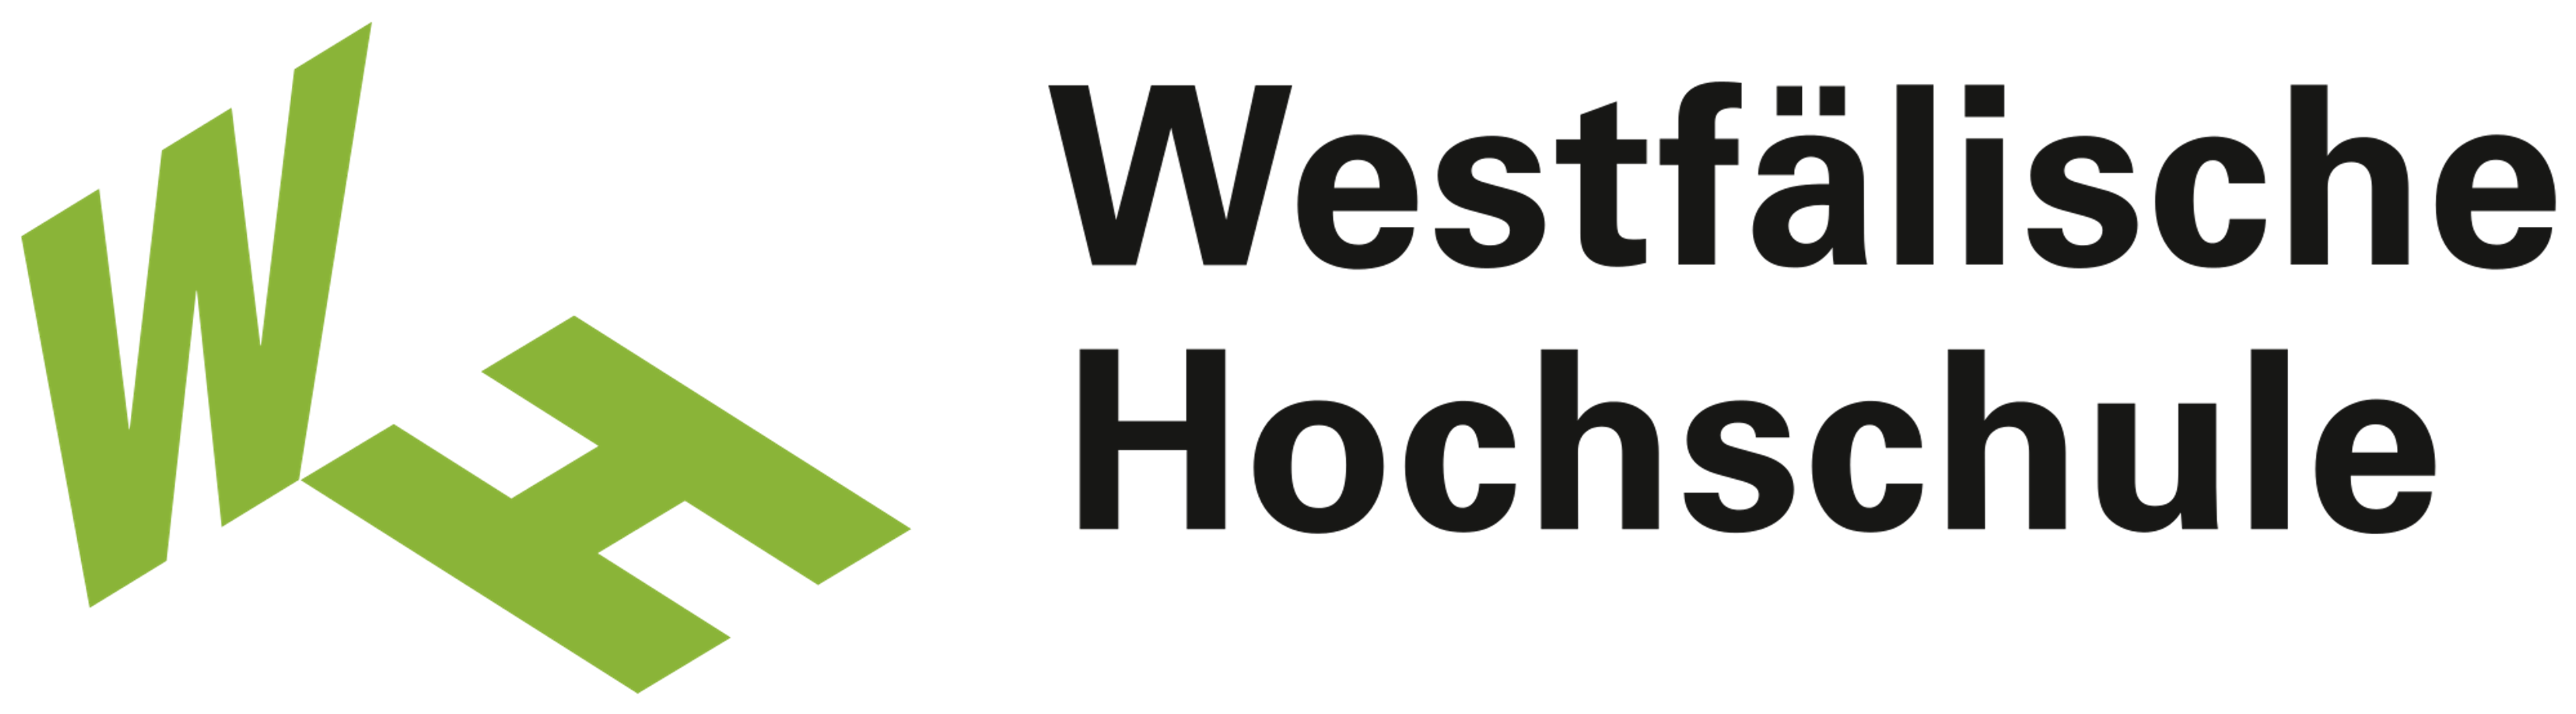 westfälische hochschule